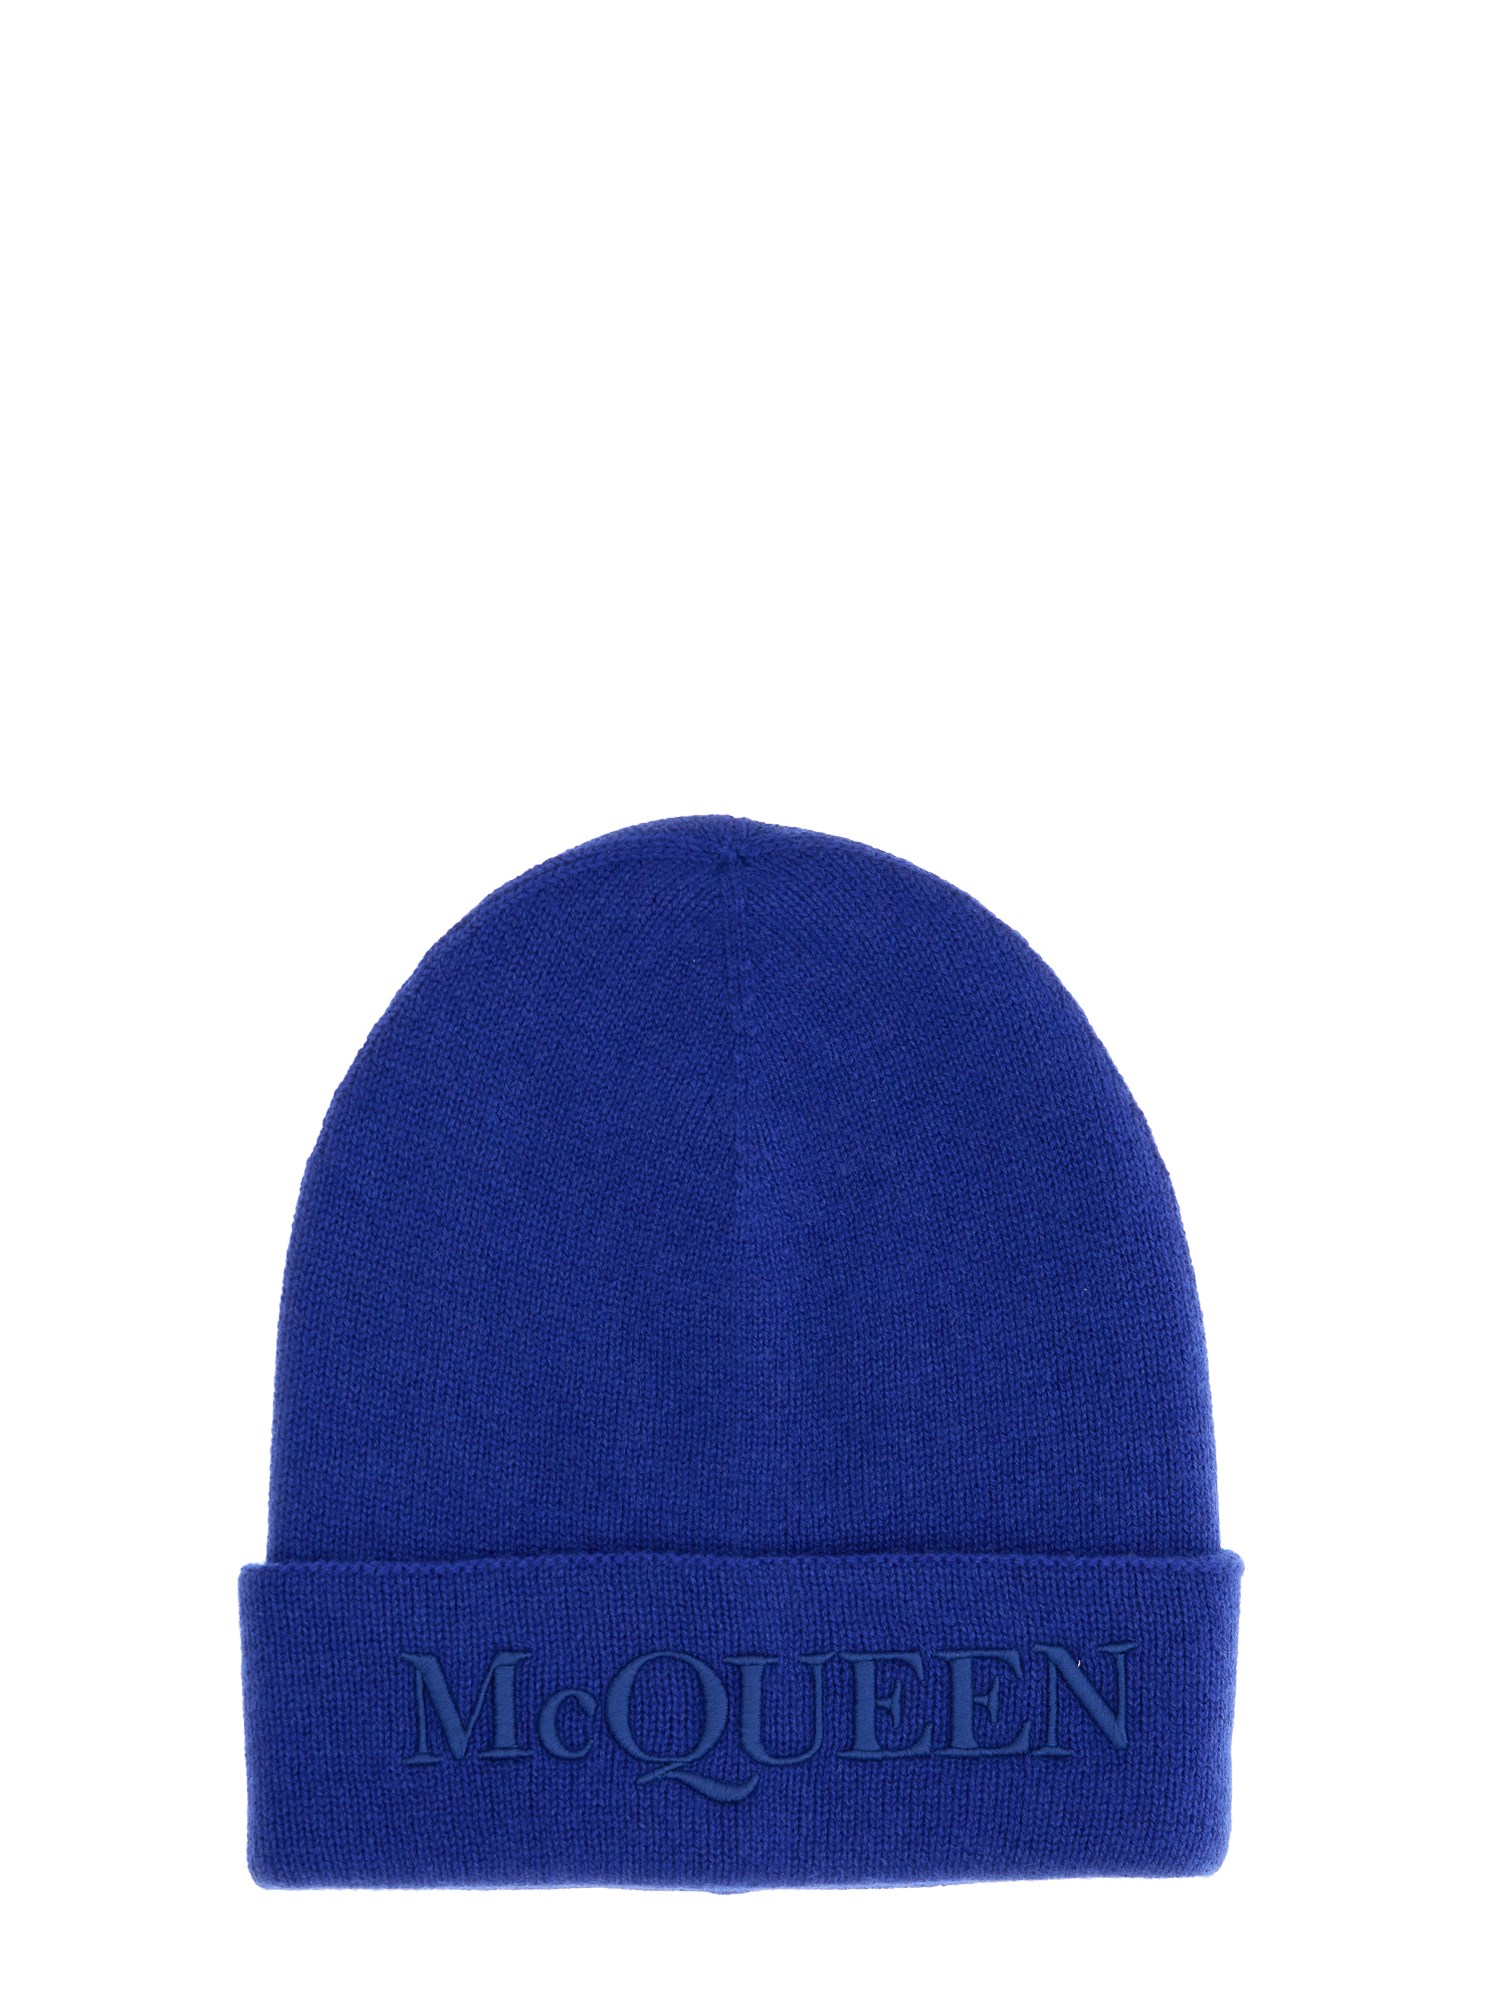 alexander mcqueen hat with logo